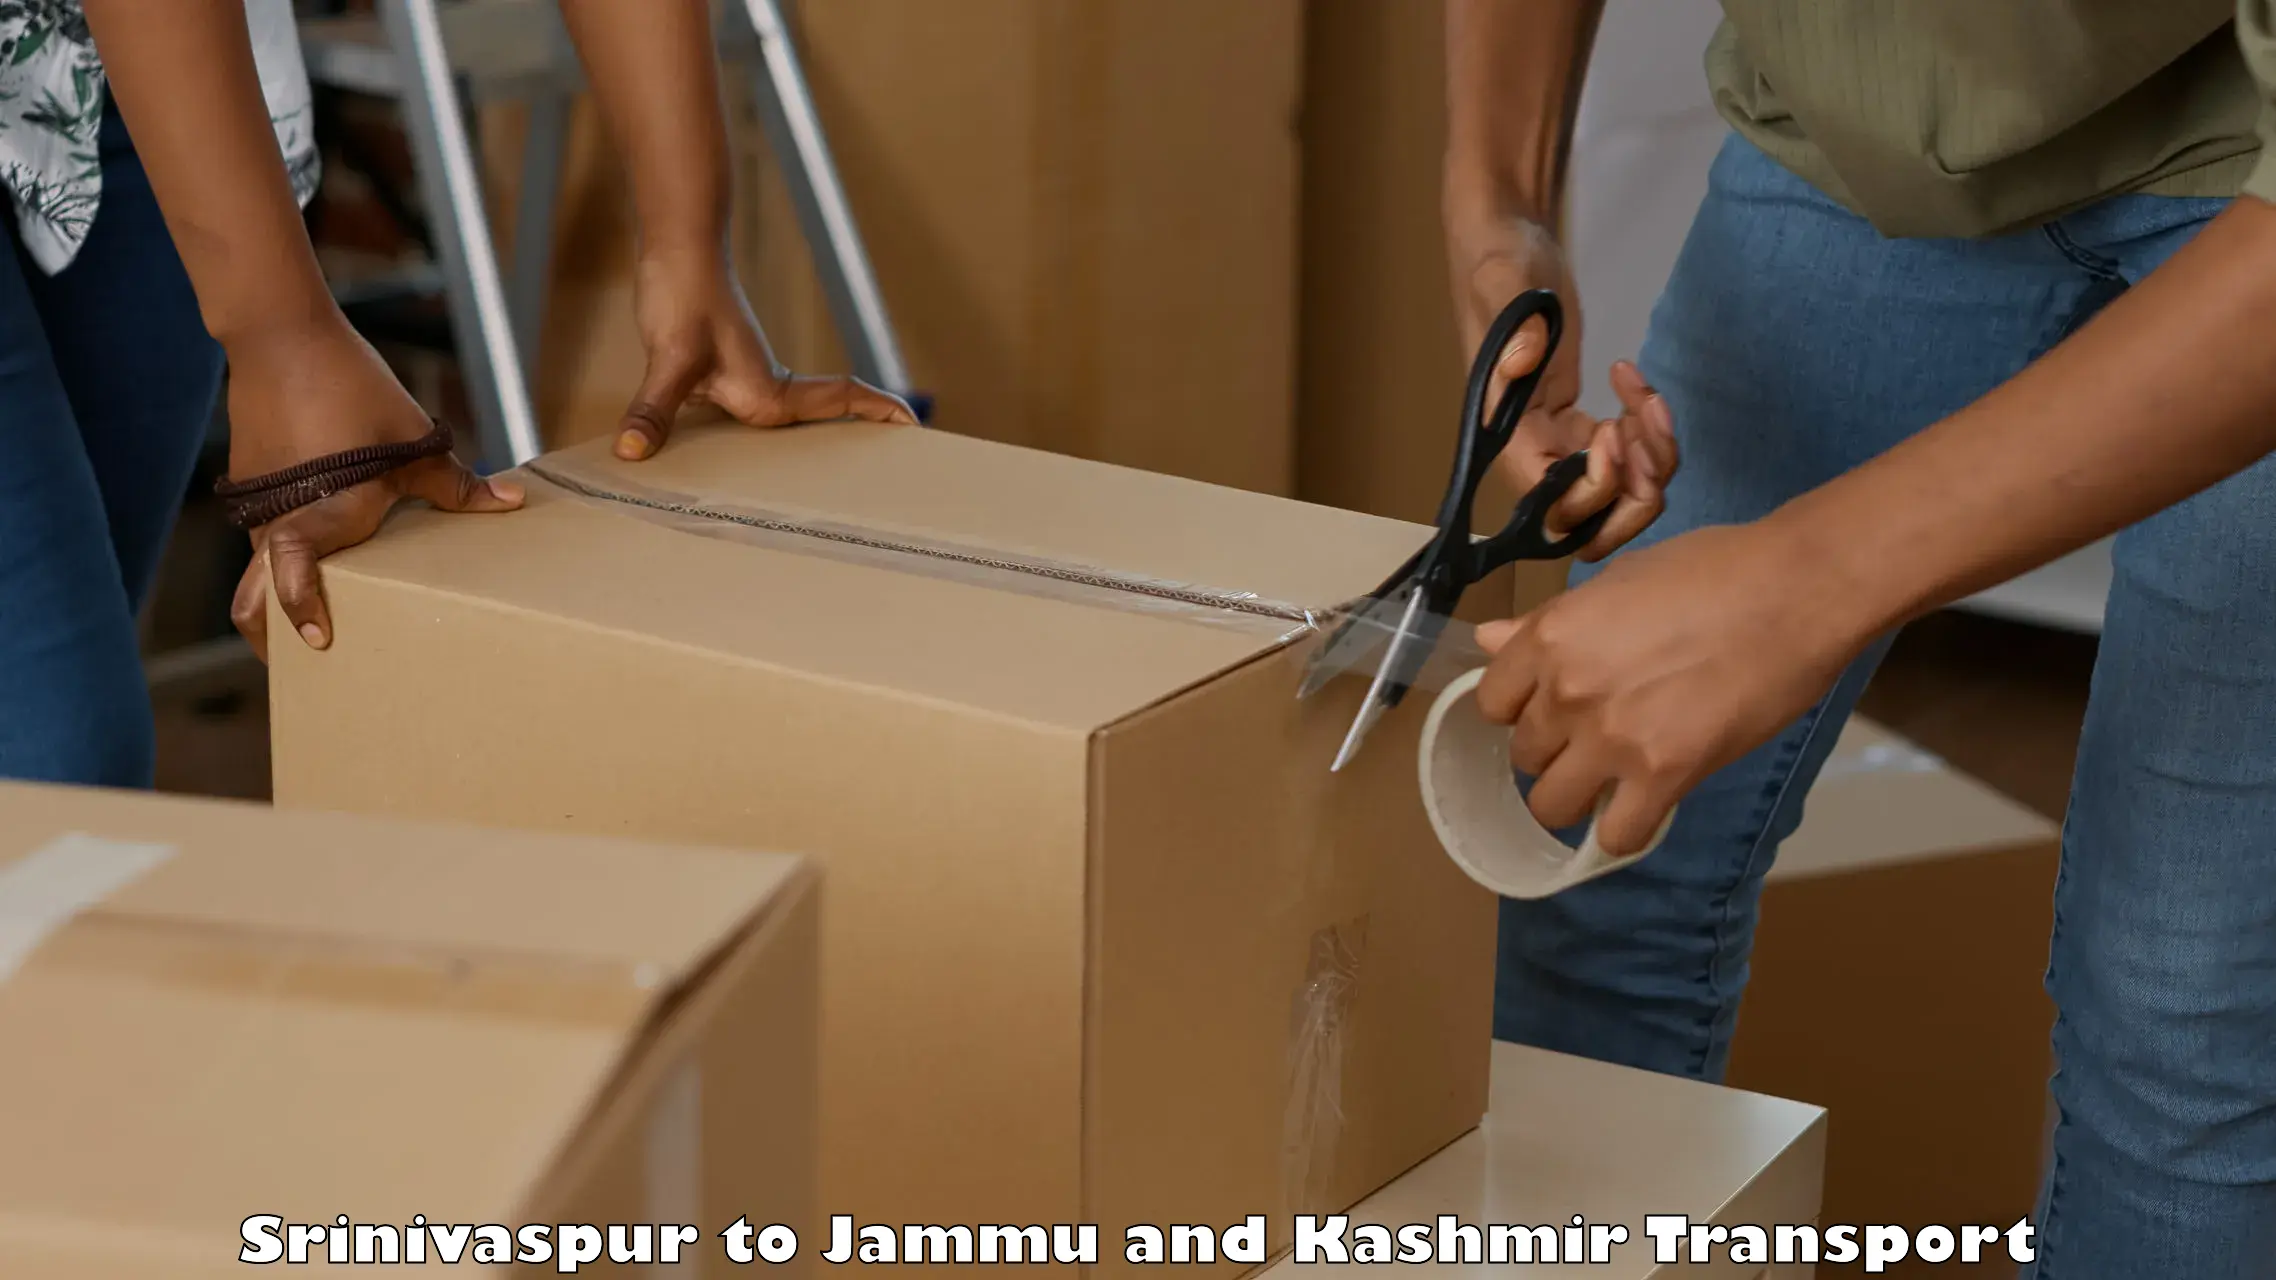 Transport in sharing Srinivaspur to Jammu